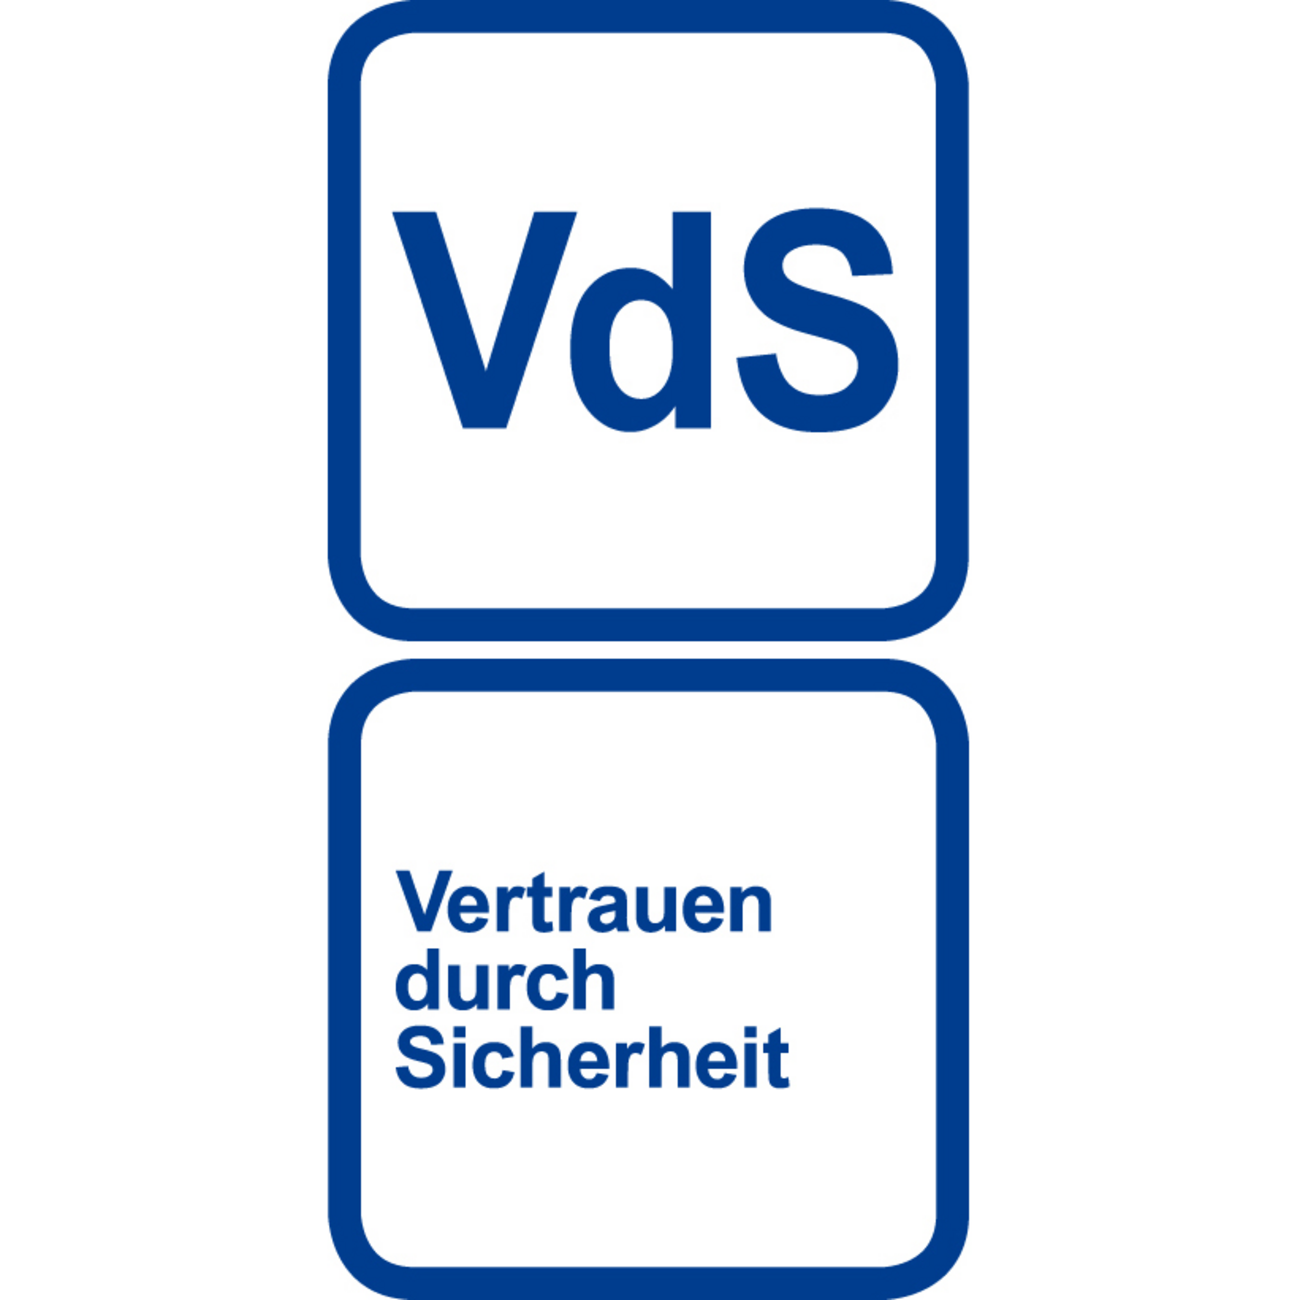 Vertrauen durch Sicherheit bei Elektro-Datz GmbH & Co. KG in Neu-Anspach